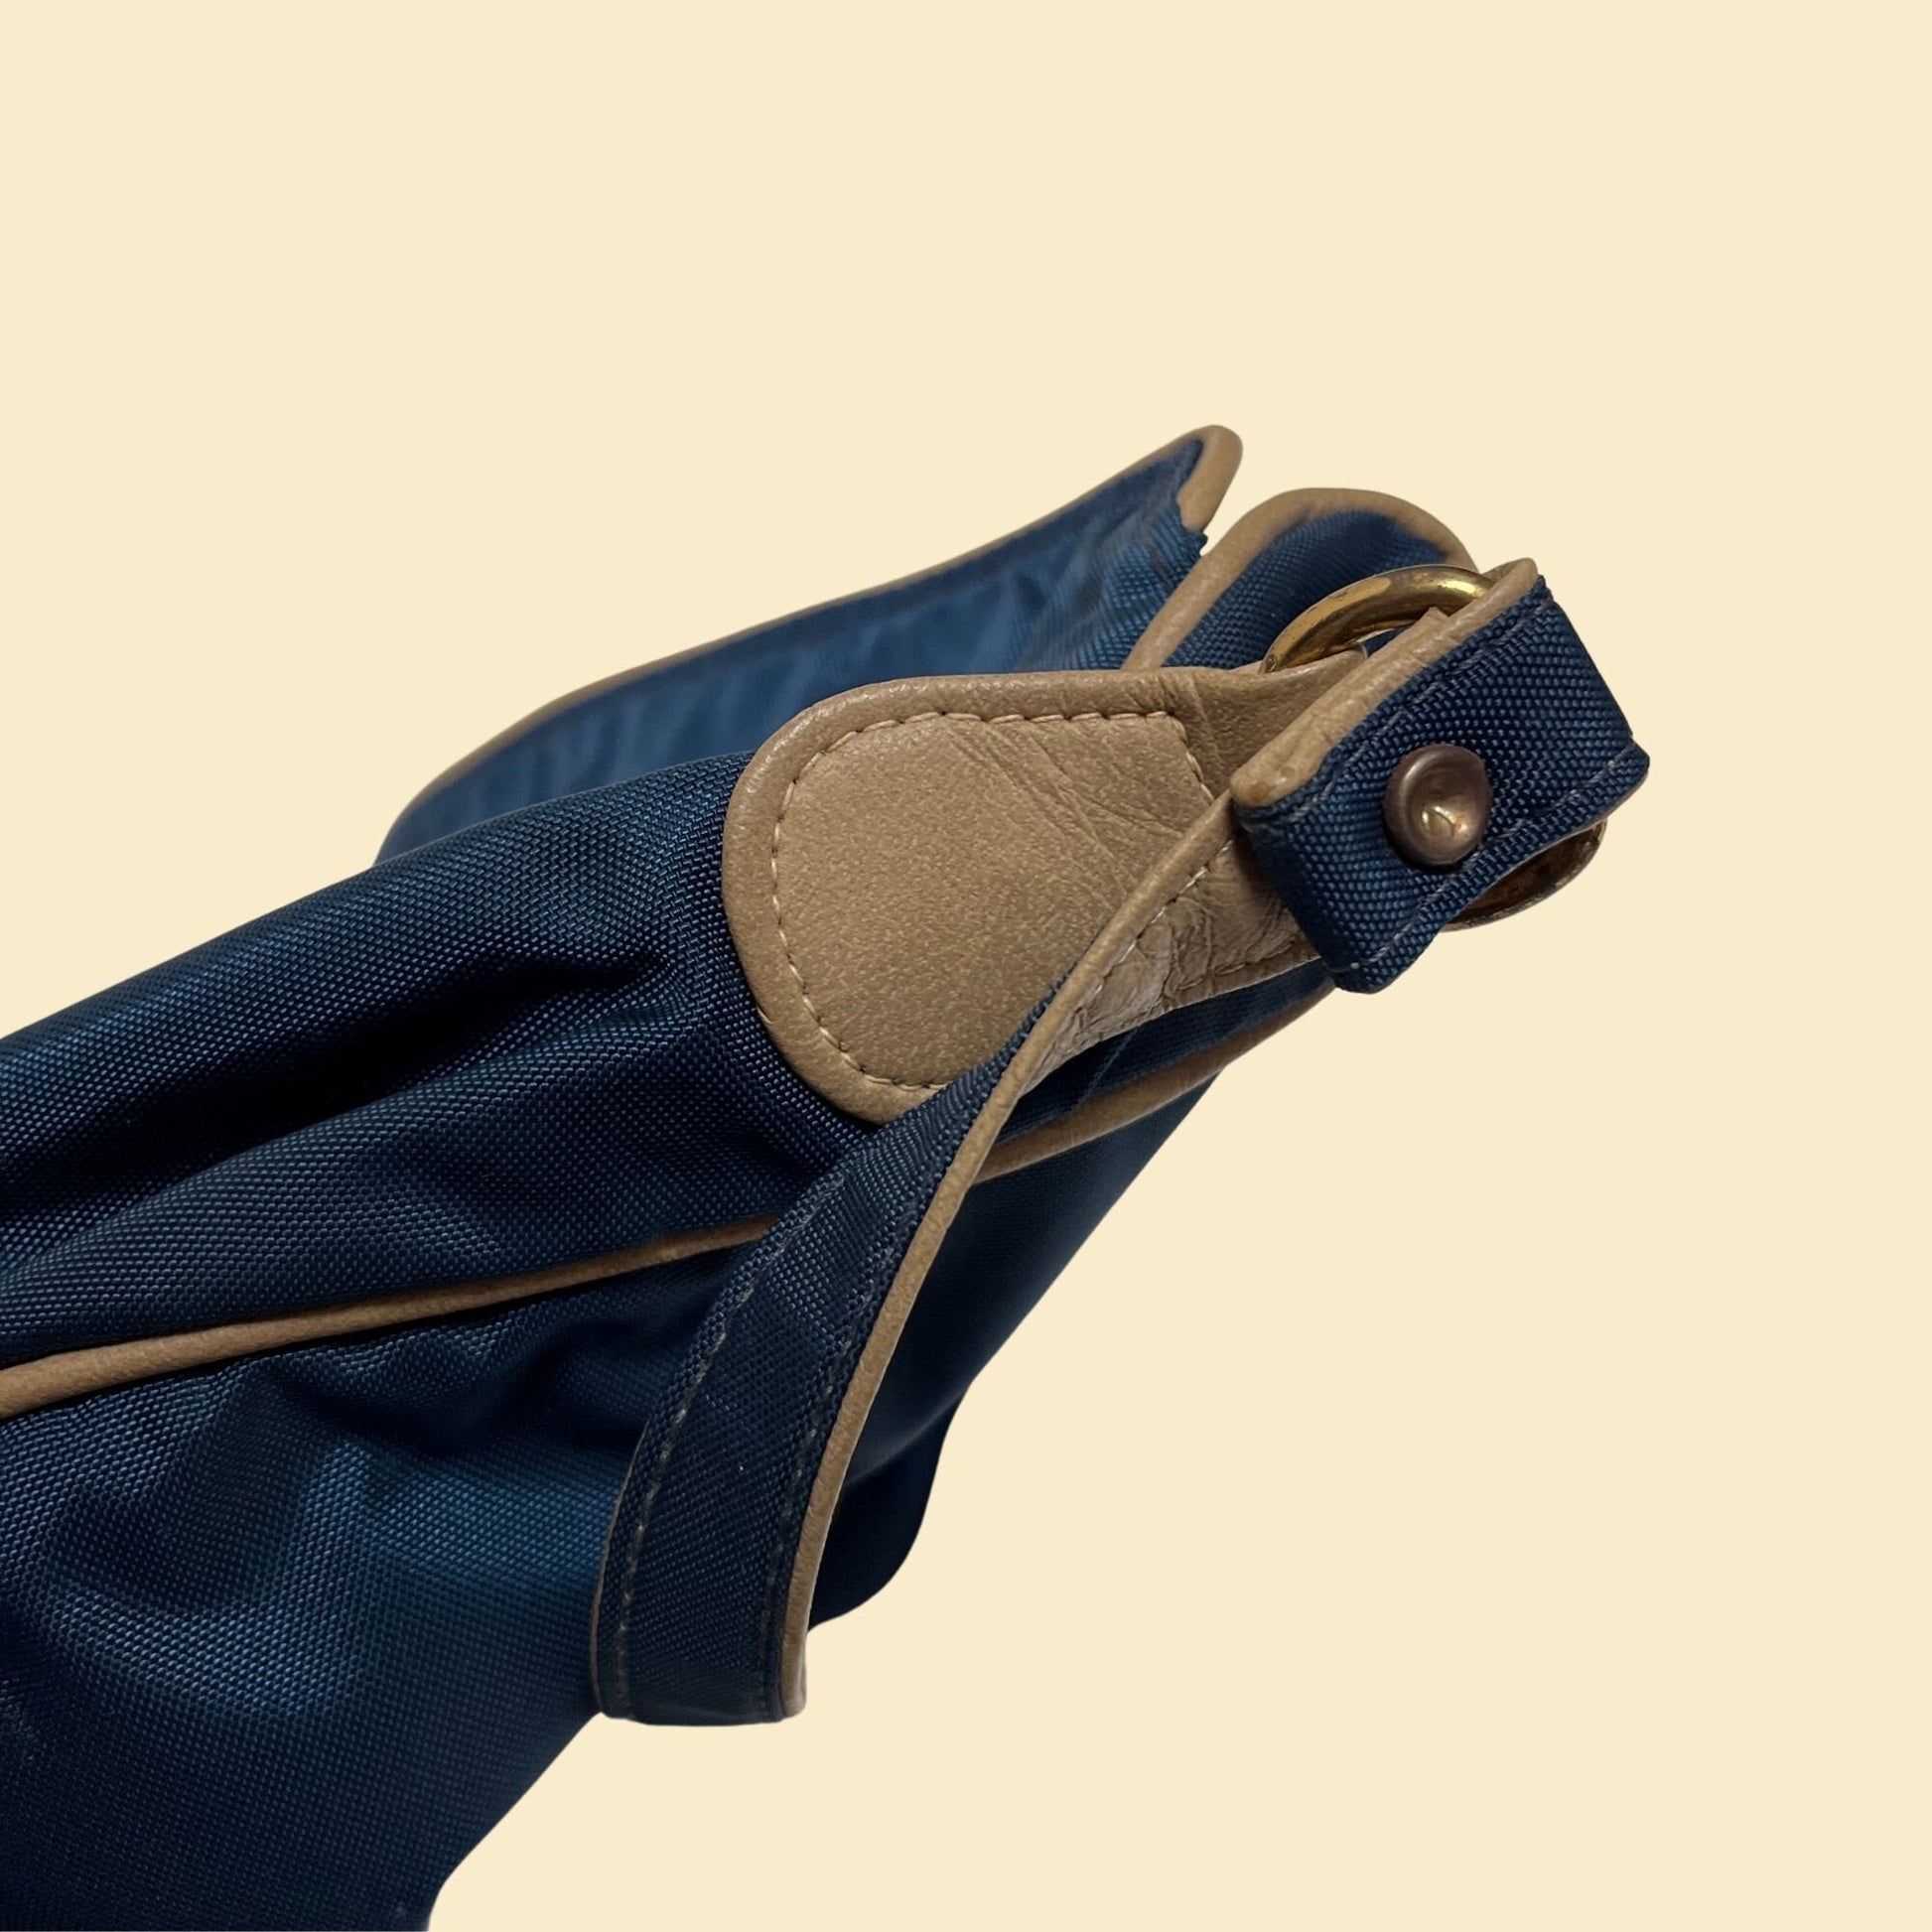 70s shoulder bag, vintage blue & beige leather/nylon travel bag with shoulder strap, 1970s casual purse